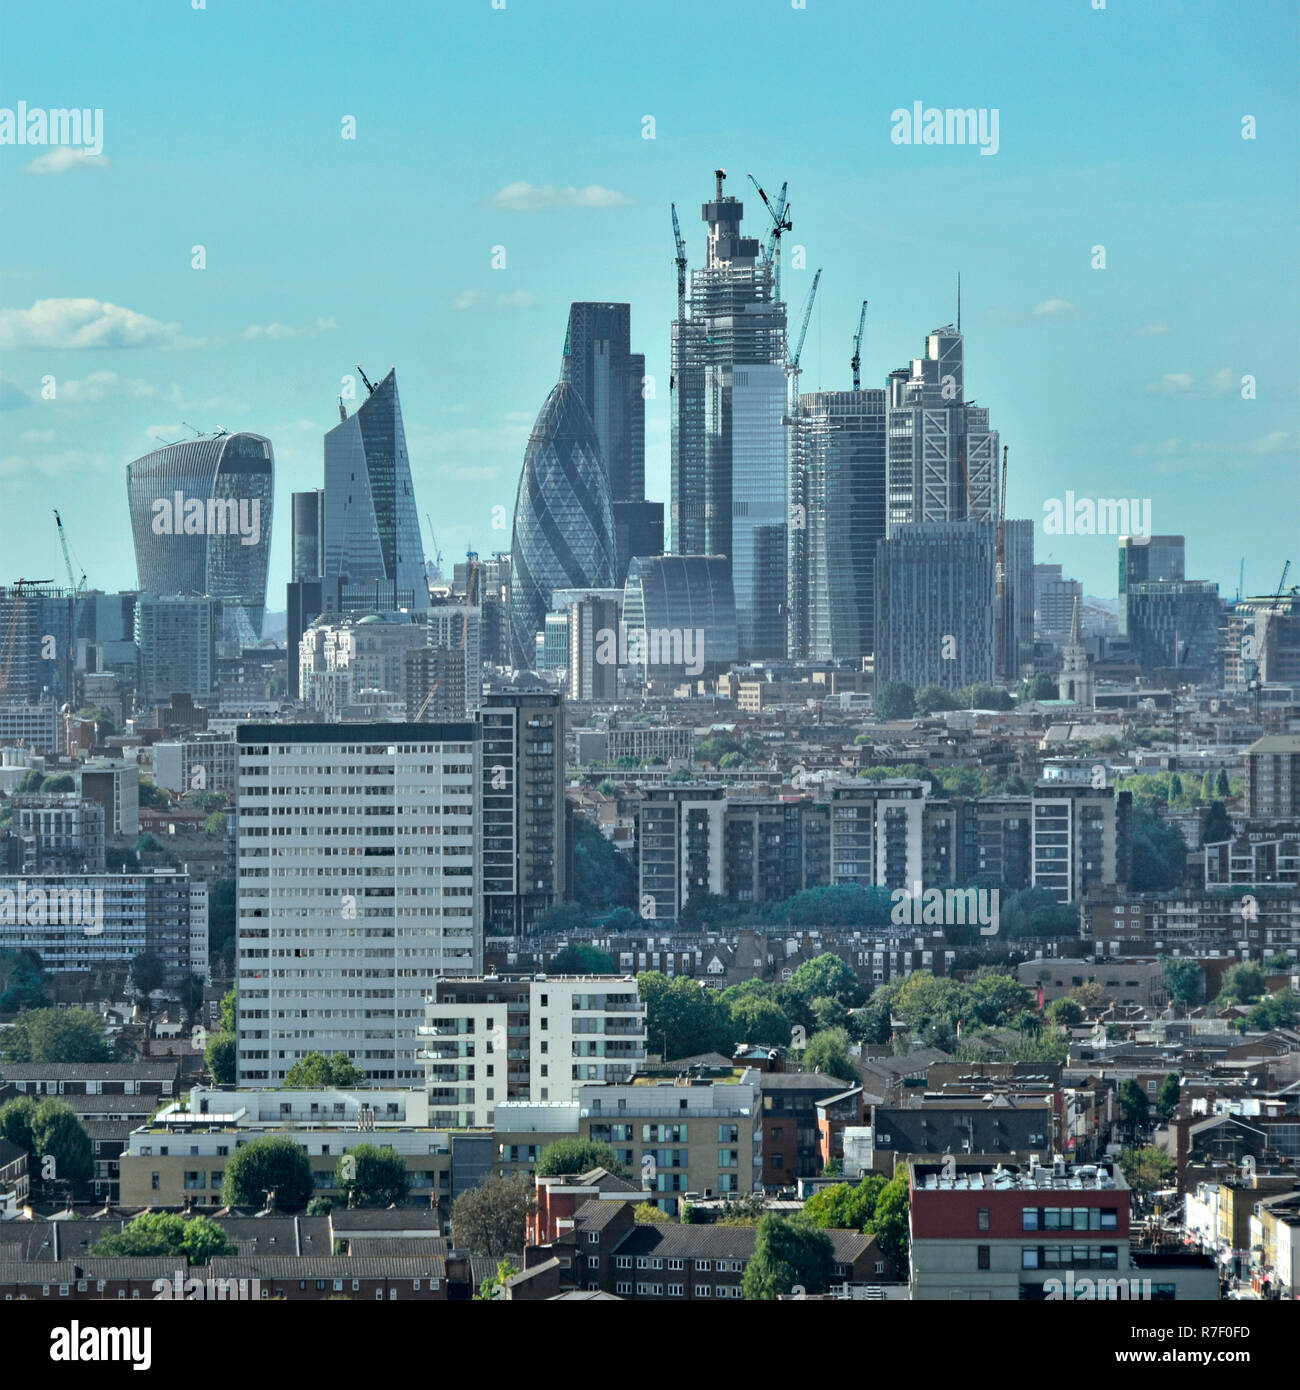 Stadt London Skyline Skyline & Wahrzeichen Wolkenkratzer bauen Baustelle in Arbeit East London städtische Landschaft Vordergrund England Großbritannien Stockfoto